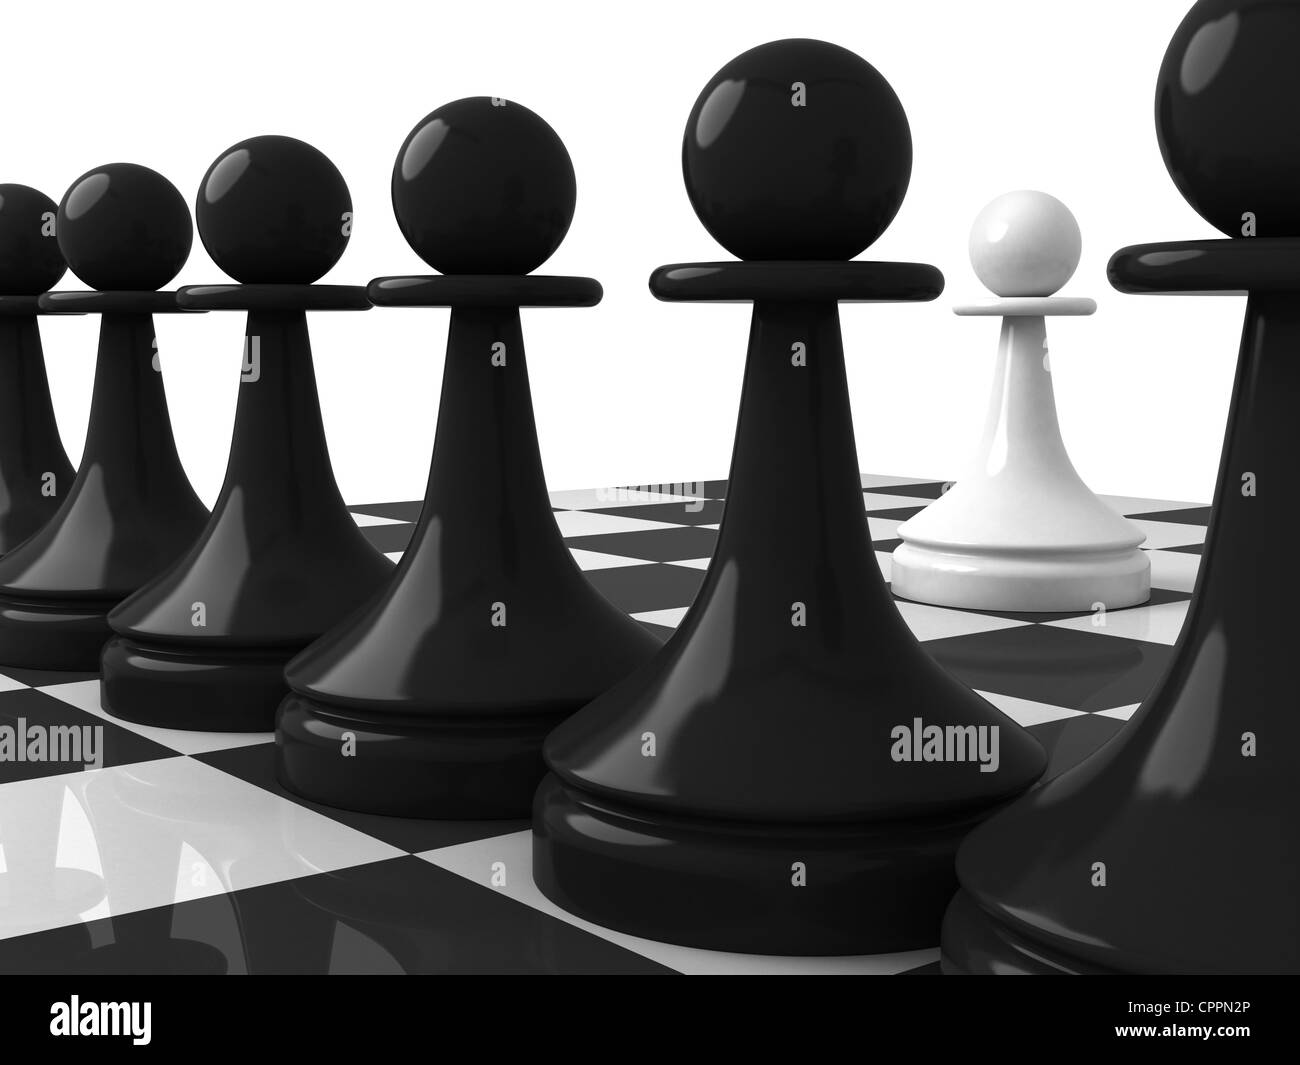 Forme classique pièces des échecs : l'un pion blanc en face de pions noirs sur l'échiquier. Rendu 3d illustration, isolated on white Banque D'Images